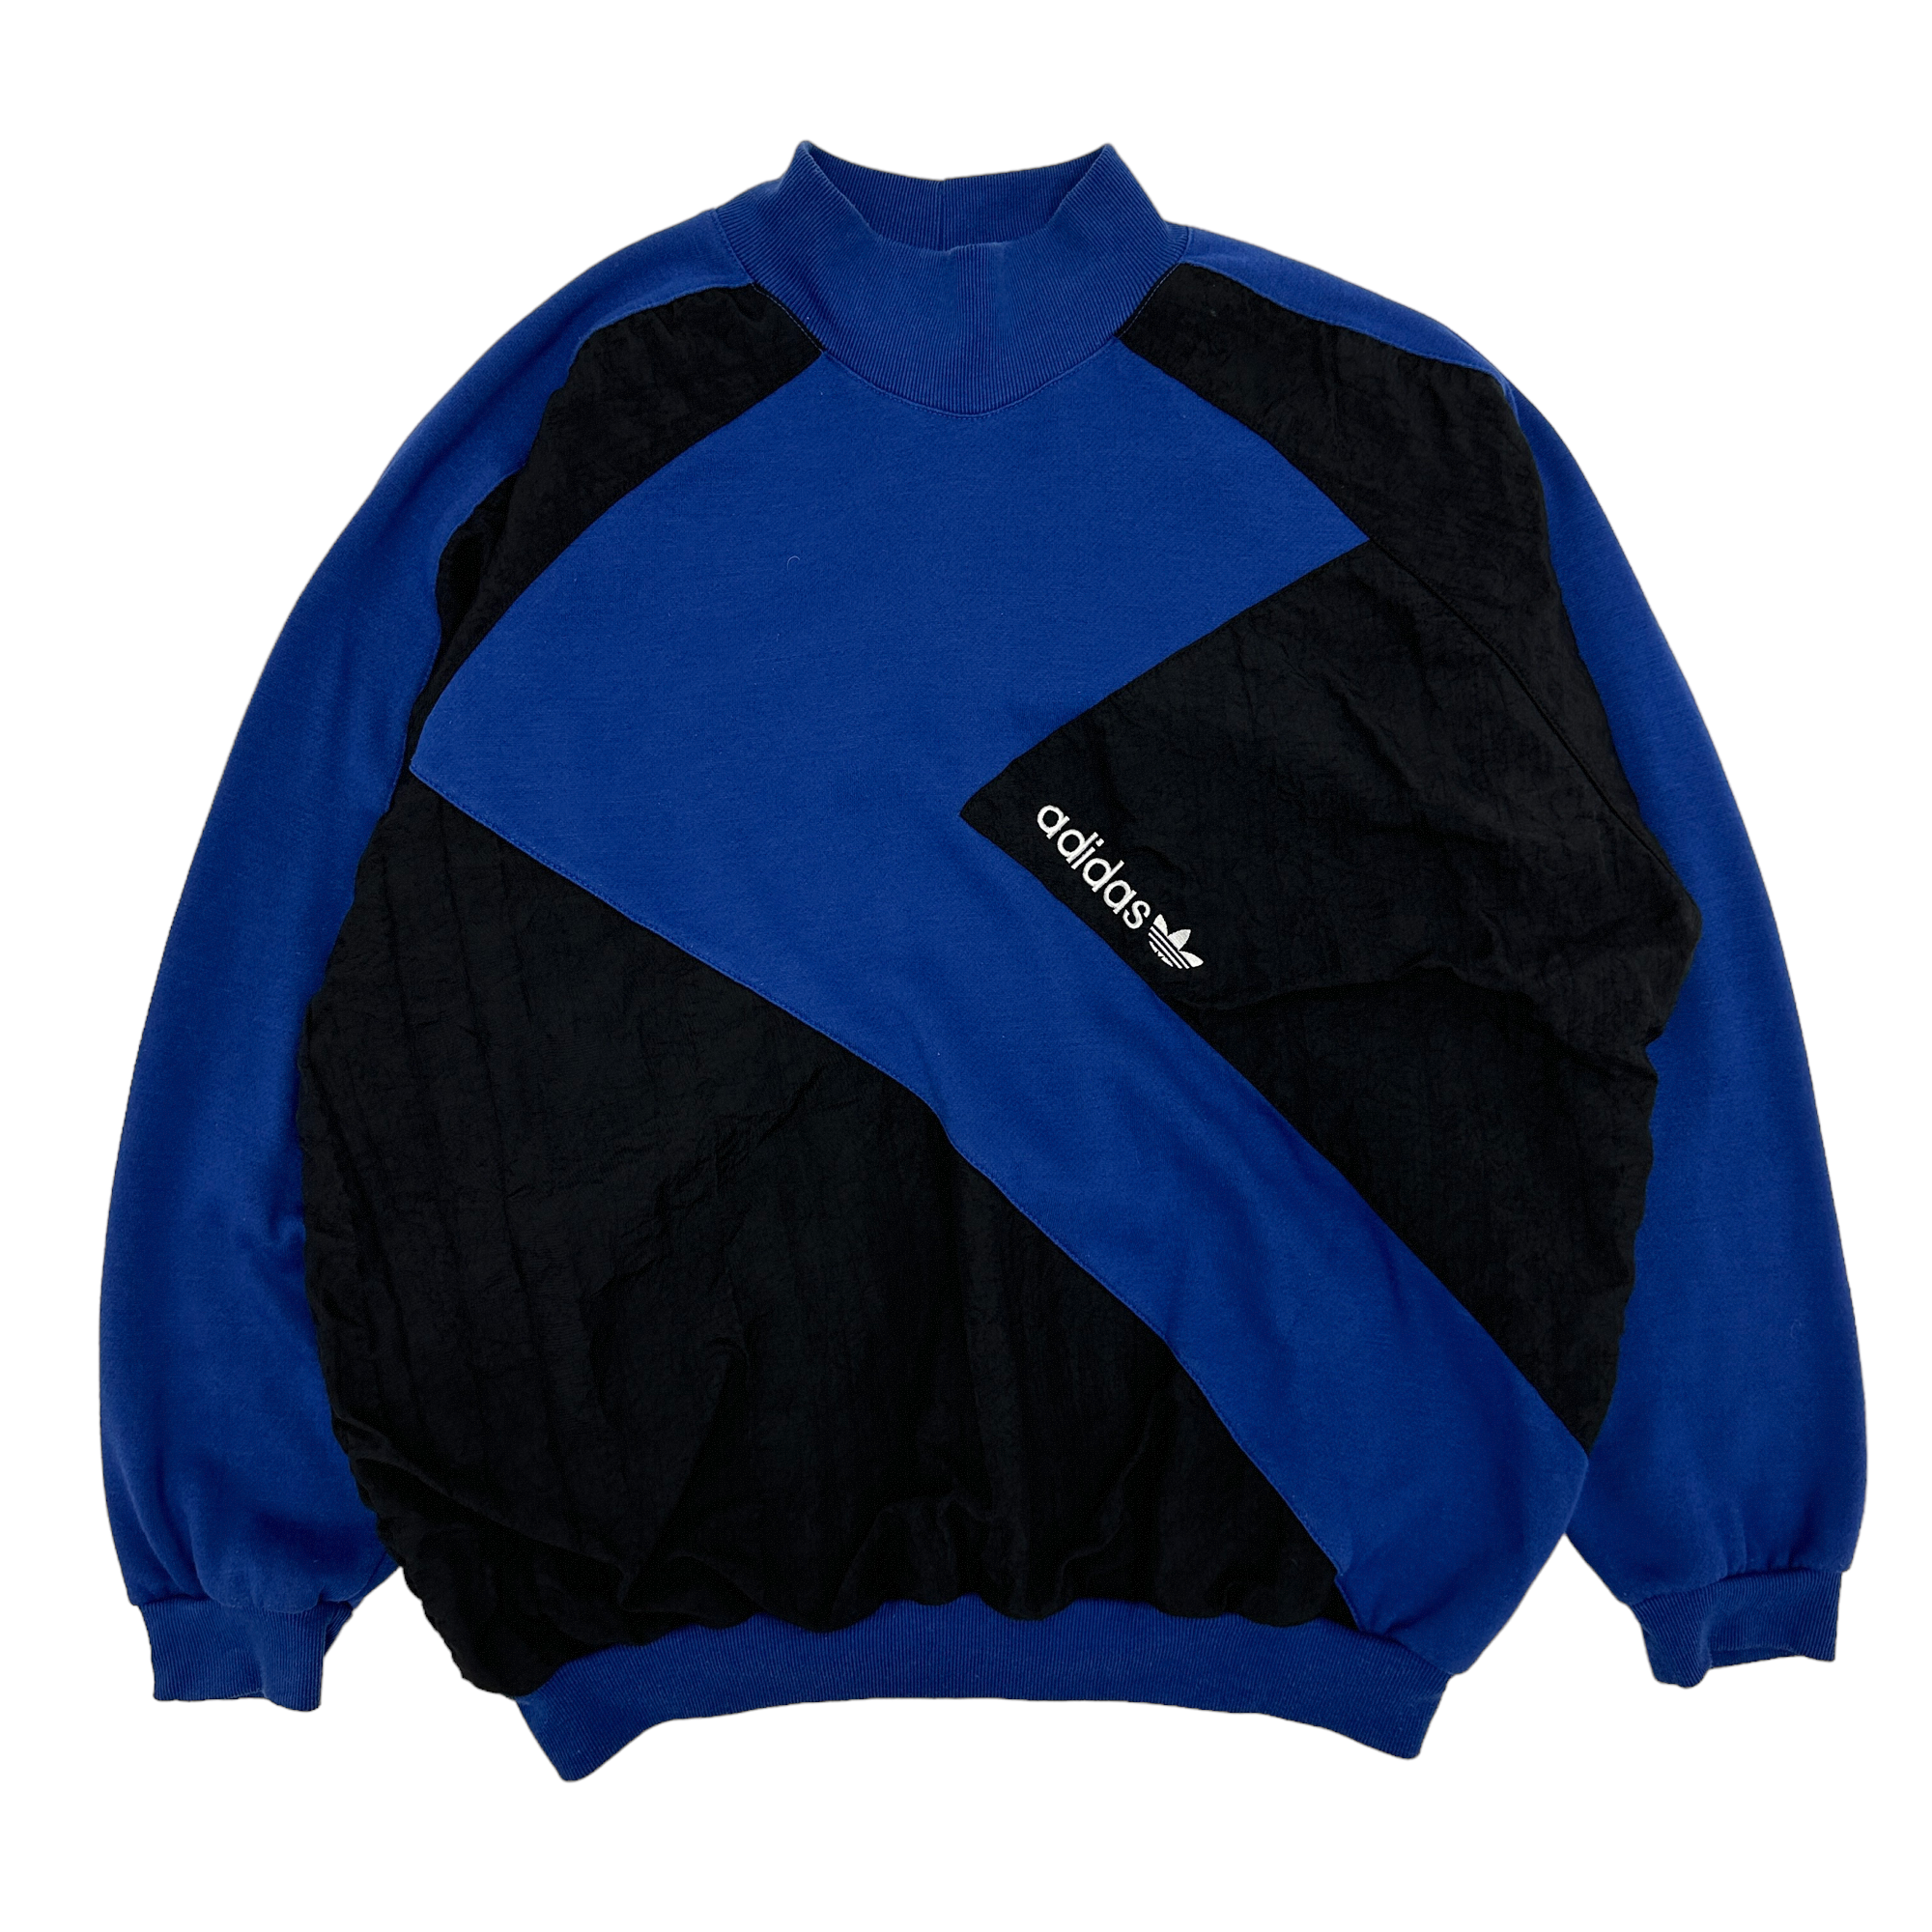 Adidas Sweatshirt - 3XL